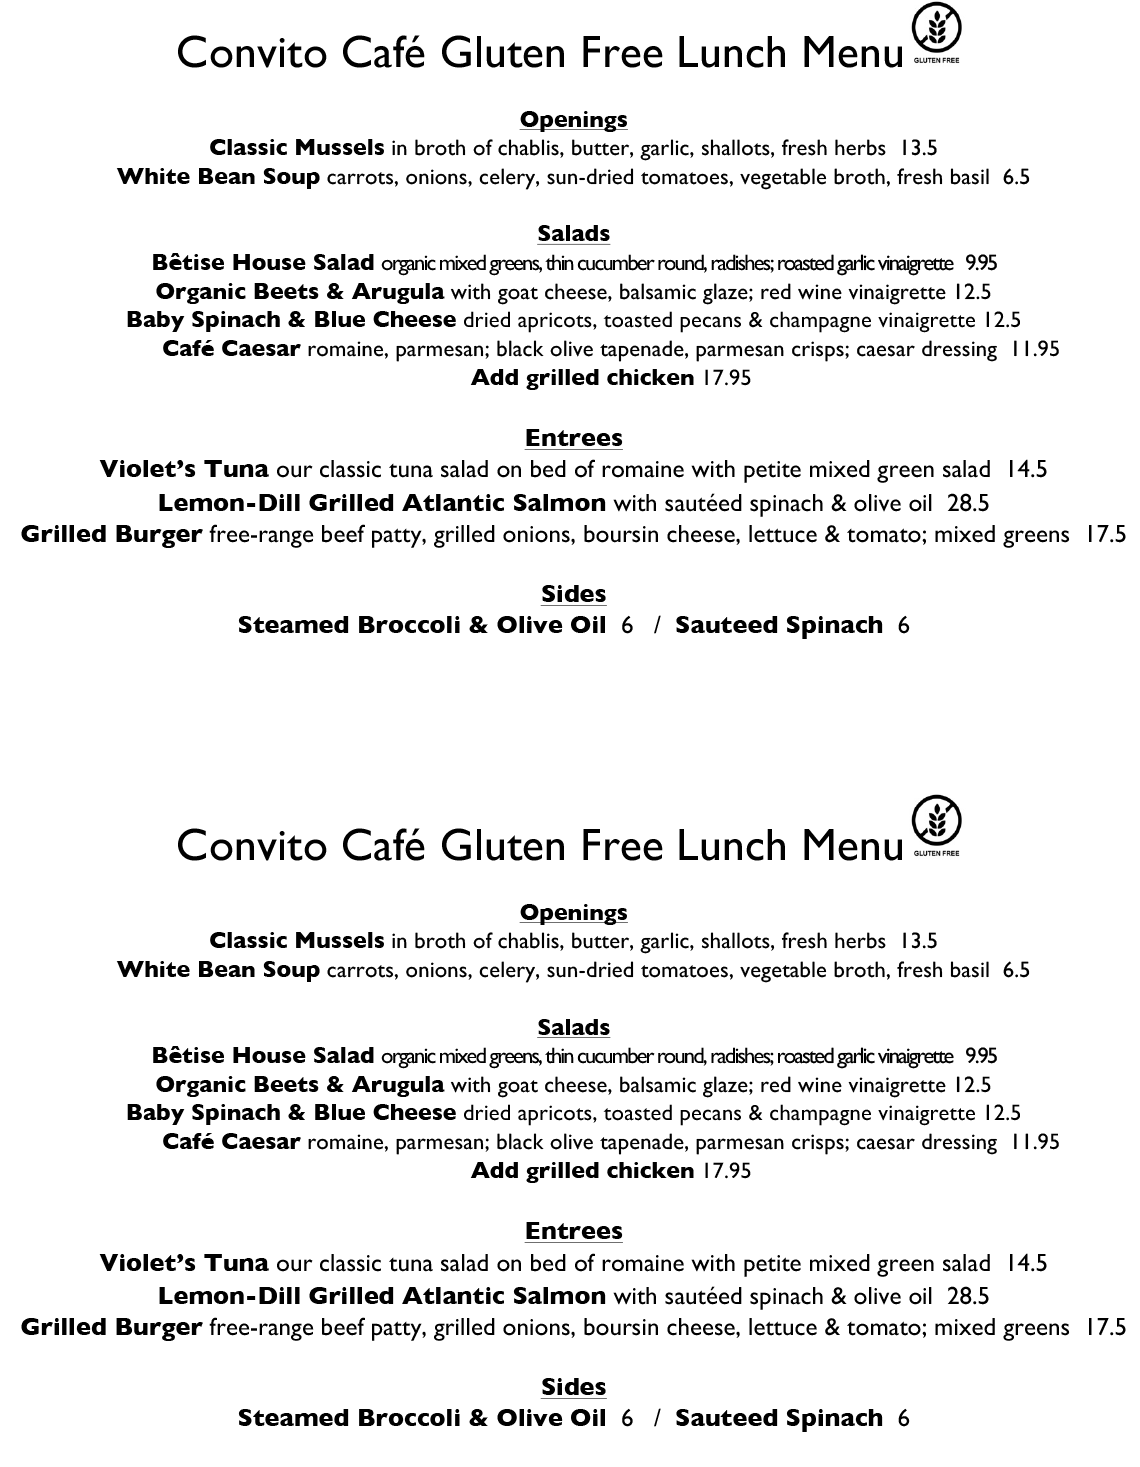 Convito Cafe Gluten Free Lunch